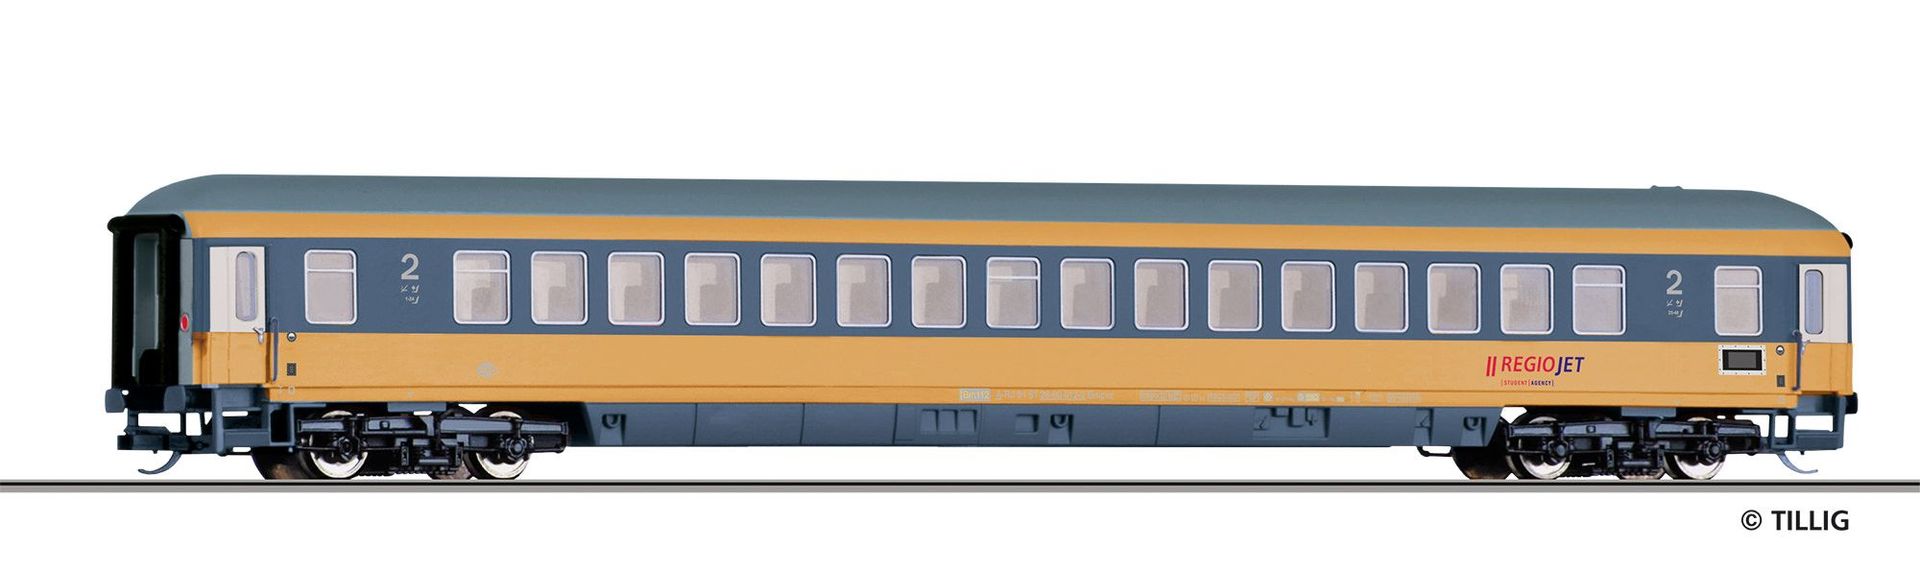 Tillig 16522 - Personenwagen RegioJet Ep.VI 2.Kl. Bmpvz TT 1:120